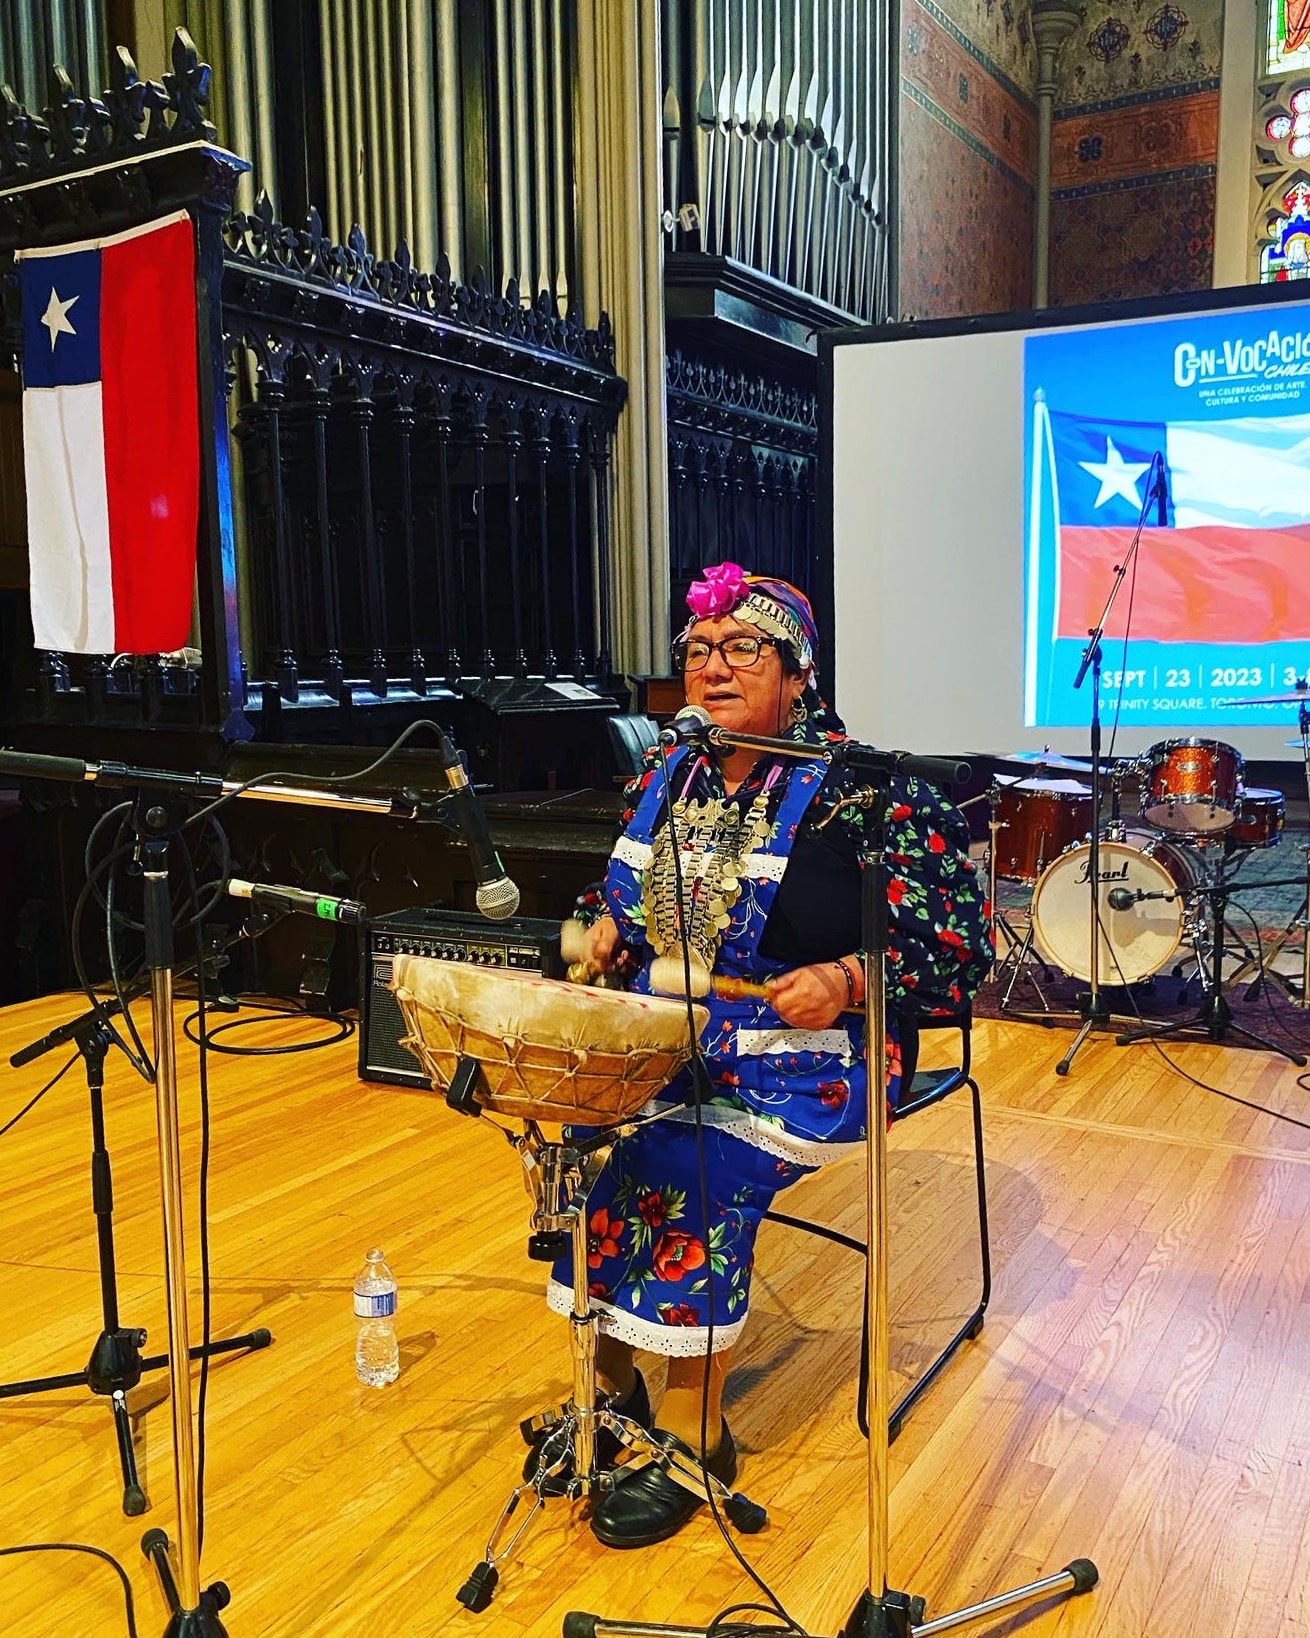 mujer mapuche cantando y tocando un tambor frente a unas banderas chilenas